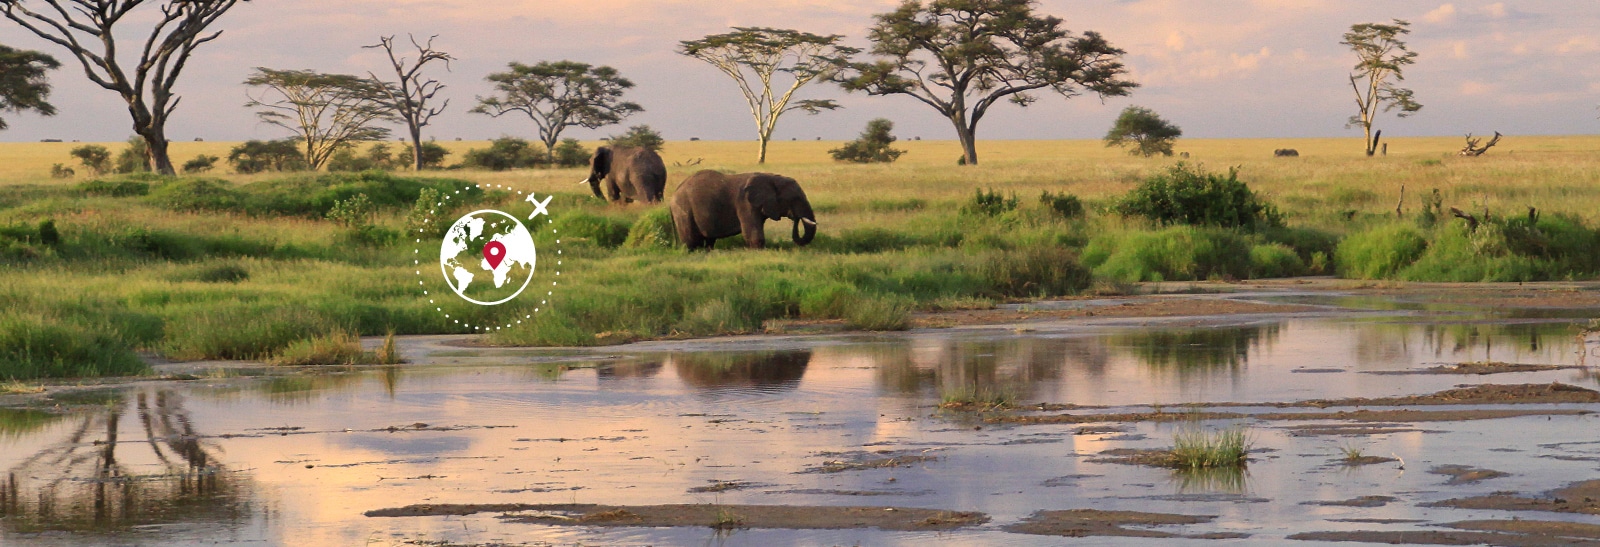 象のいるアフリカの大自然と世界一周のマーク